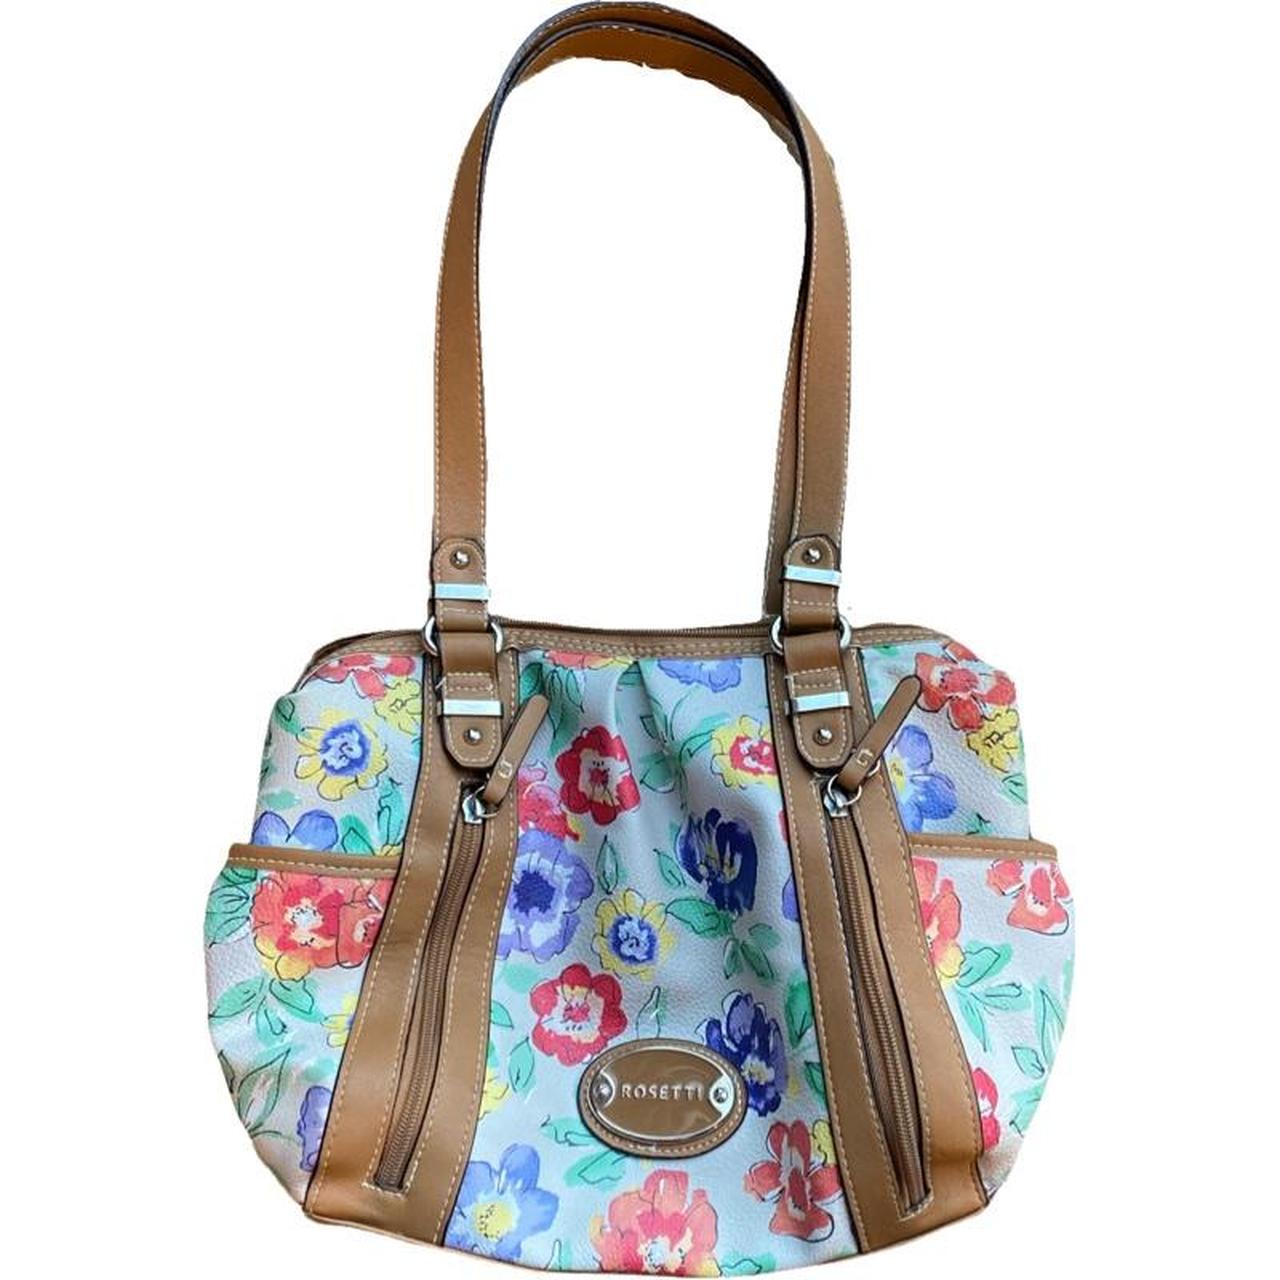 Rosetti Double Handle Handbags | Mercari